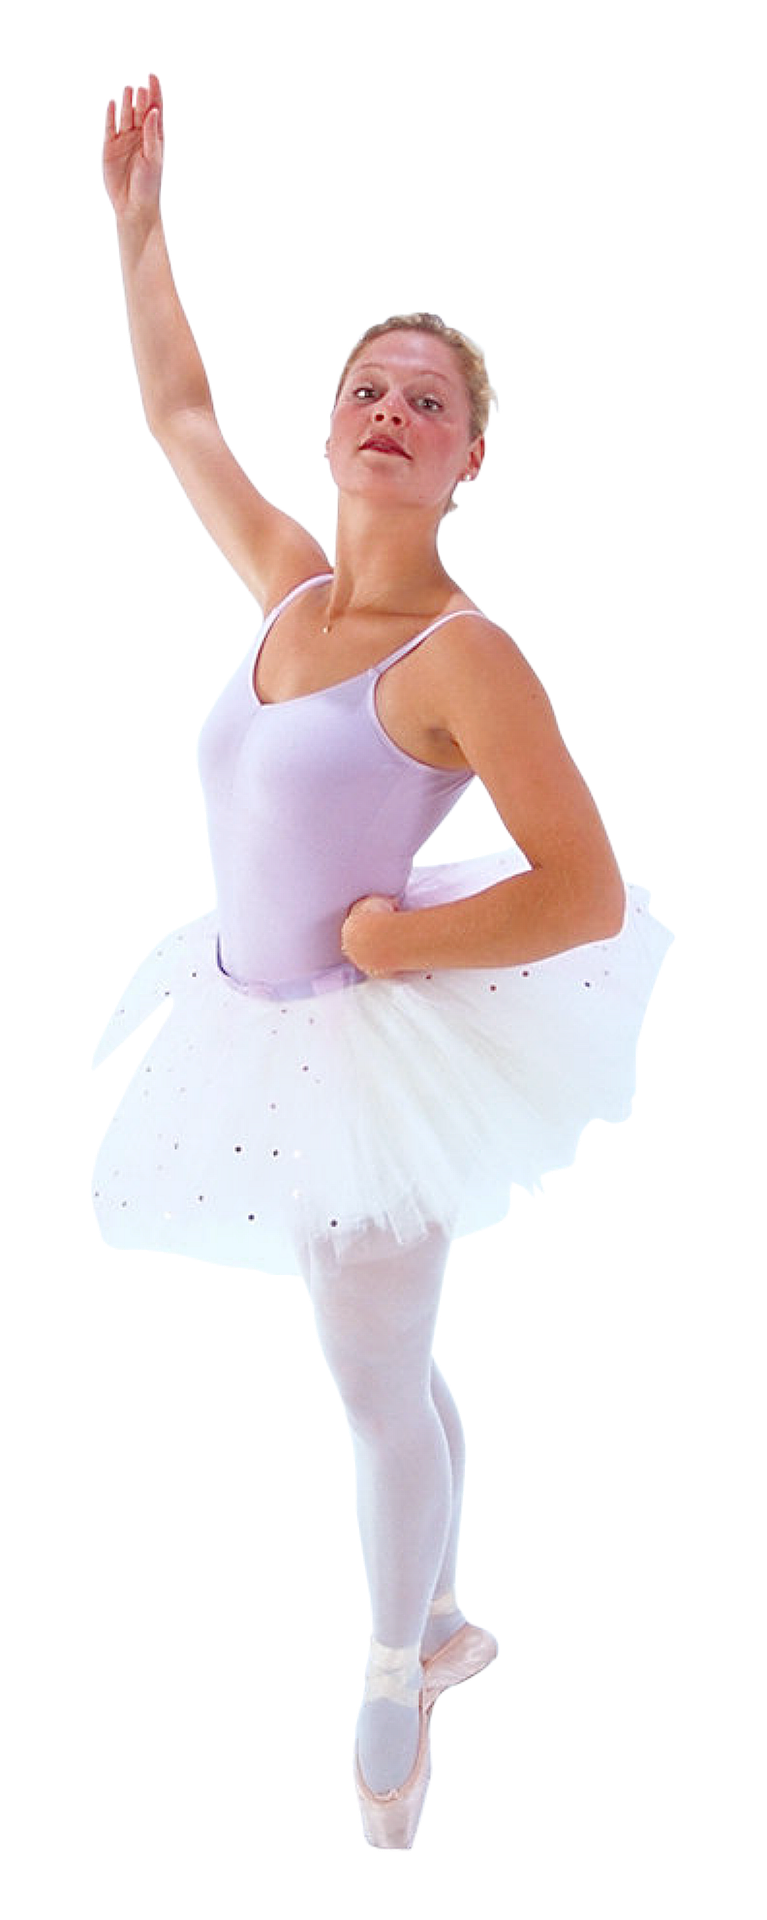 A Young Ballerina In A Tutu